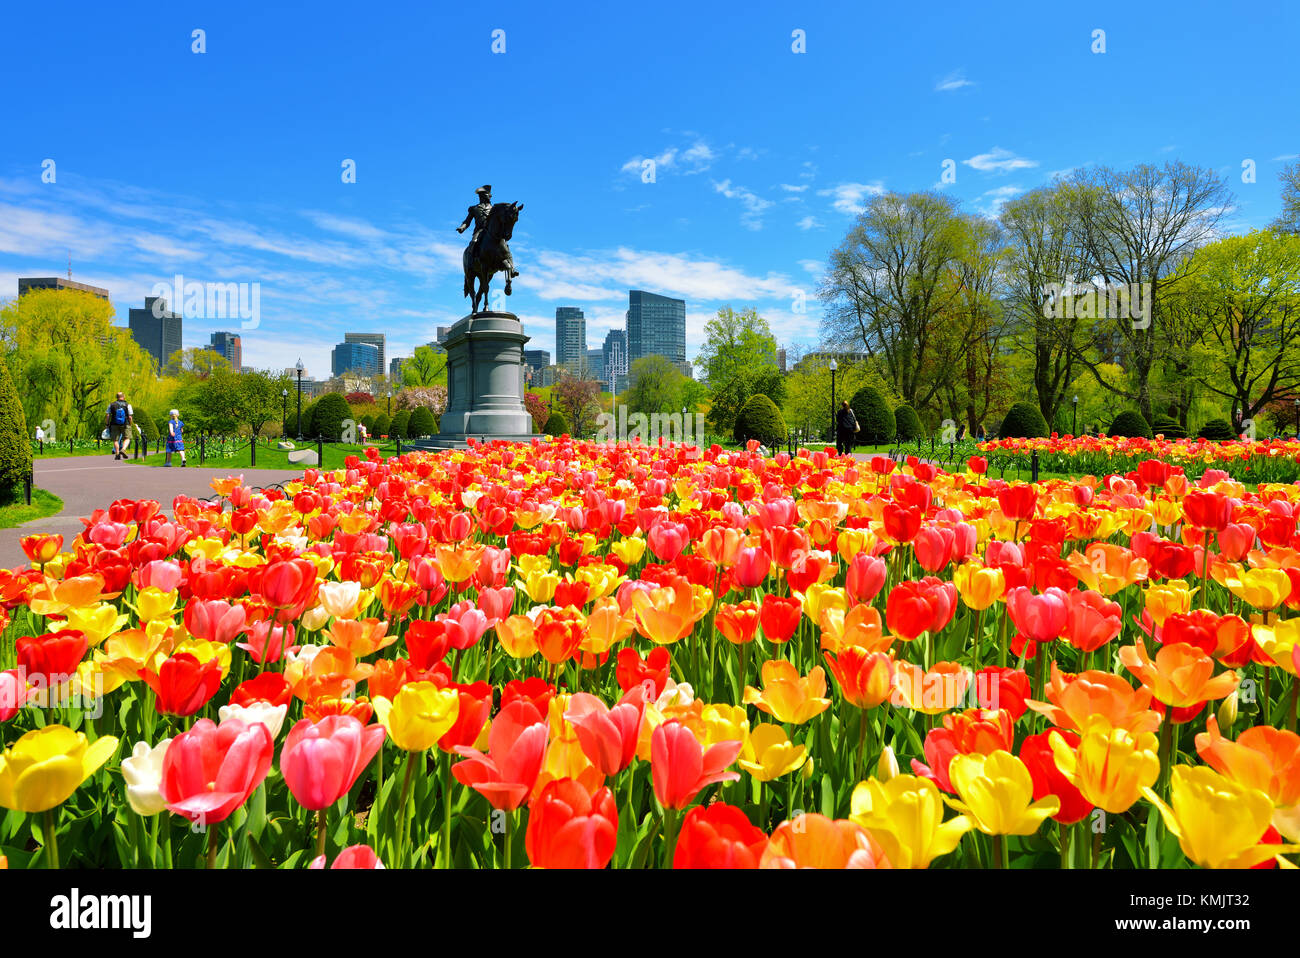 Boston Public Garden und die Skyline der Stadt an einem schönen Frühlingstag. Bunte Tulpen gepflanzt in der Masse vor der George Washington Statue. Stockfoto